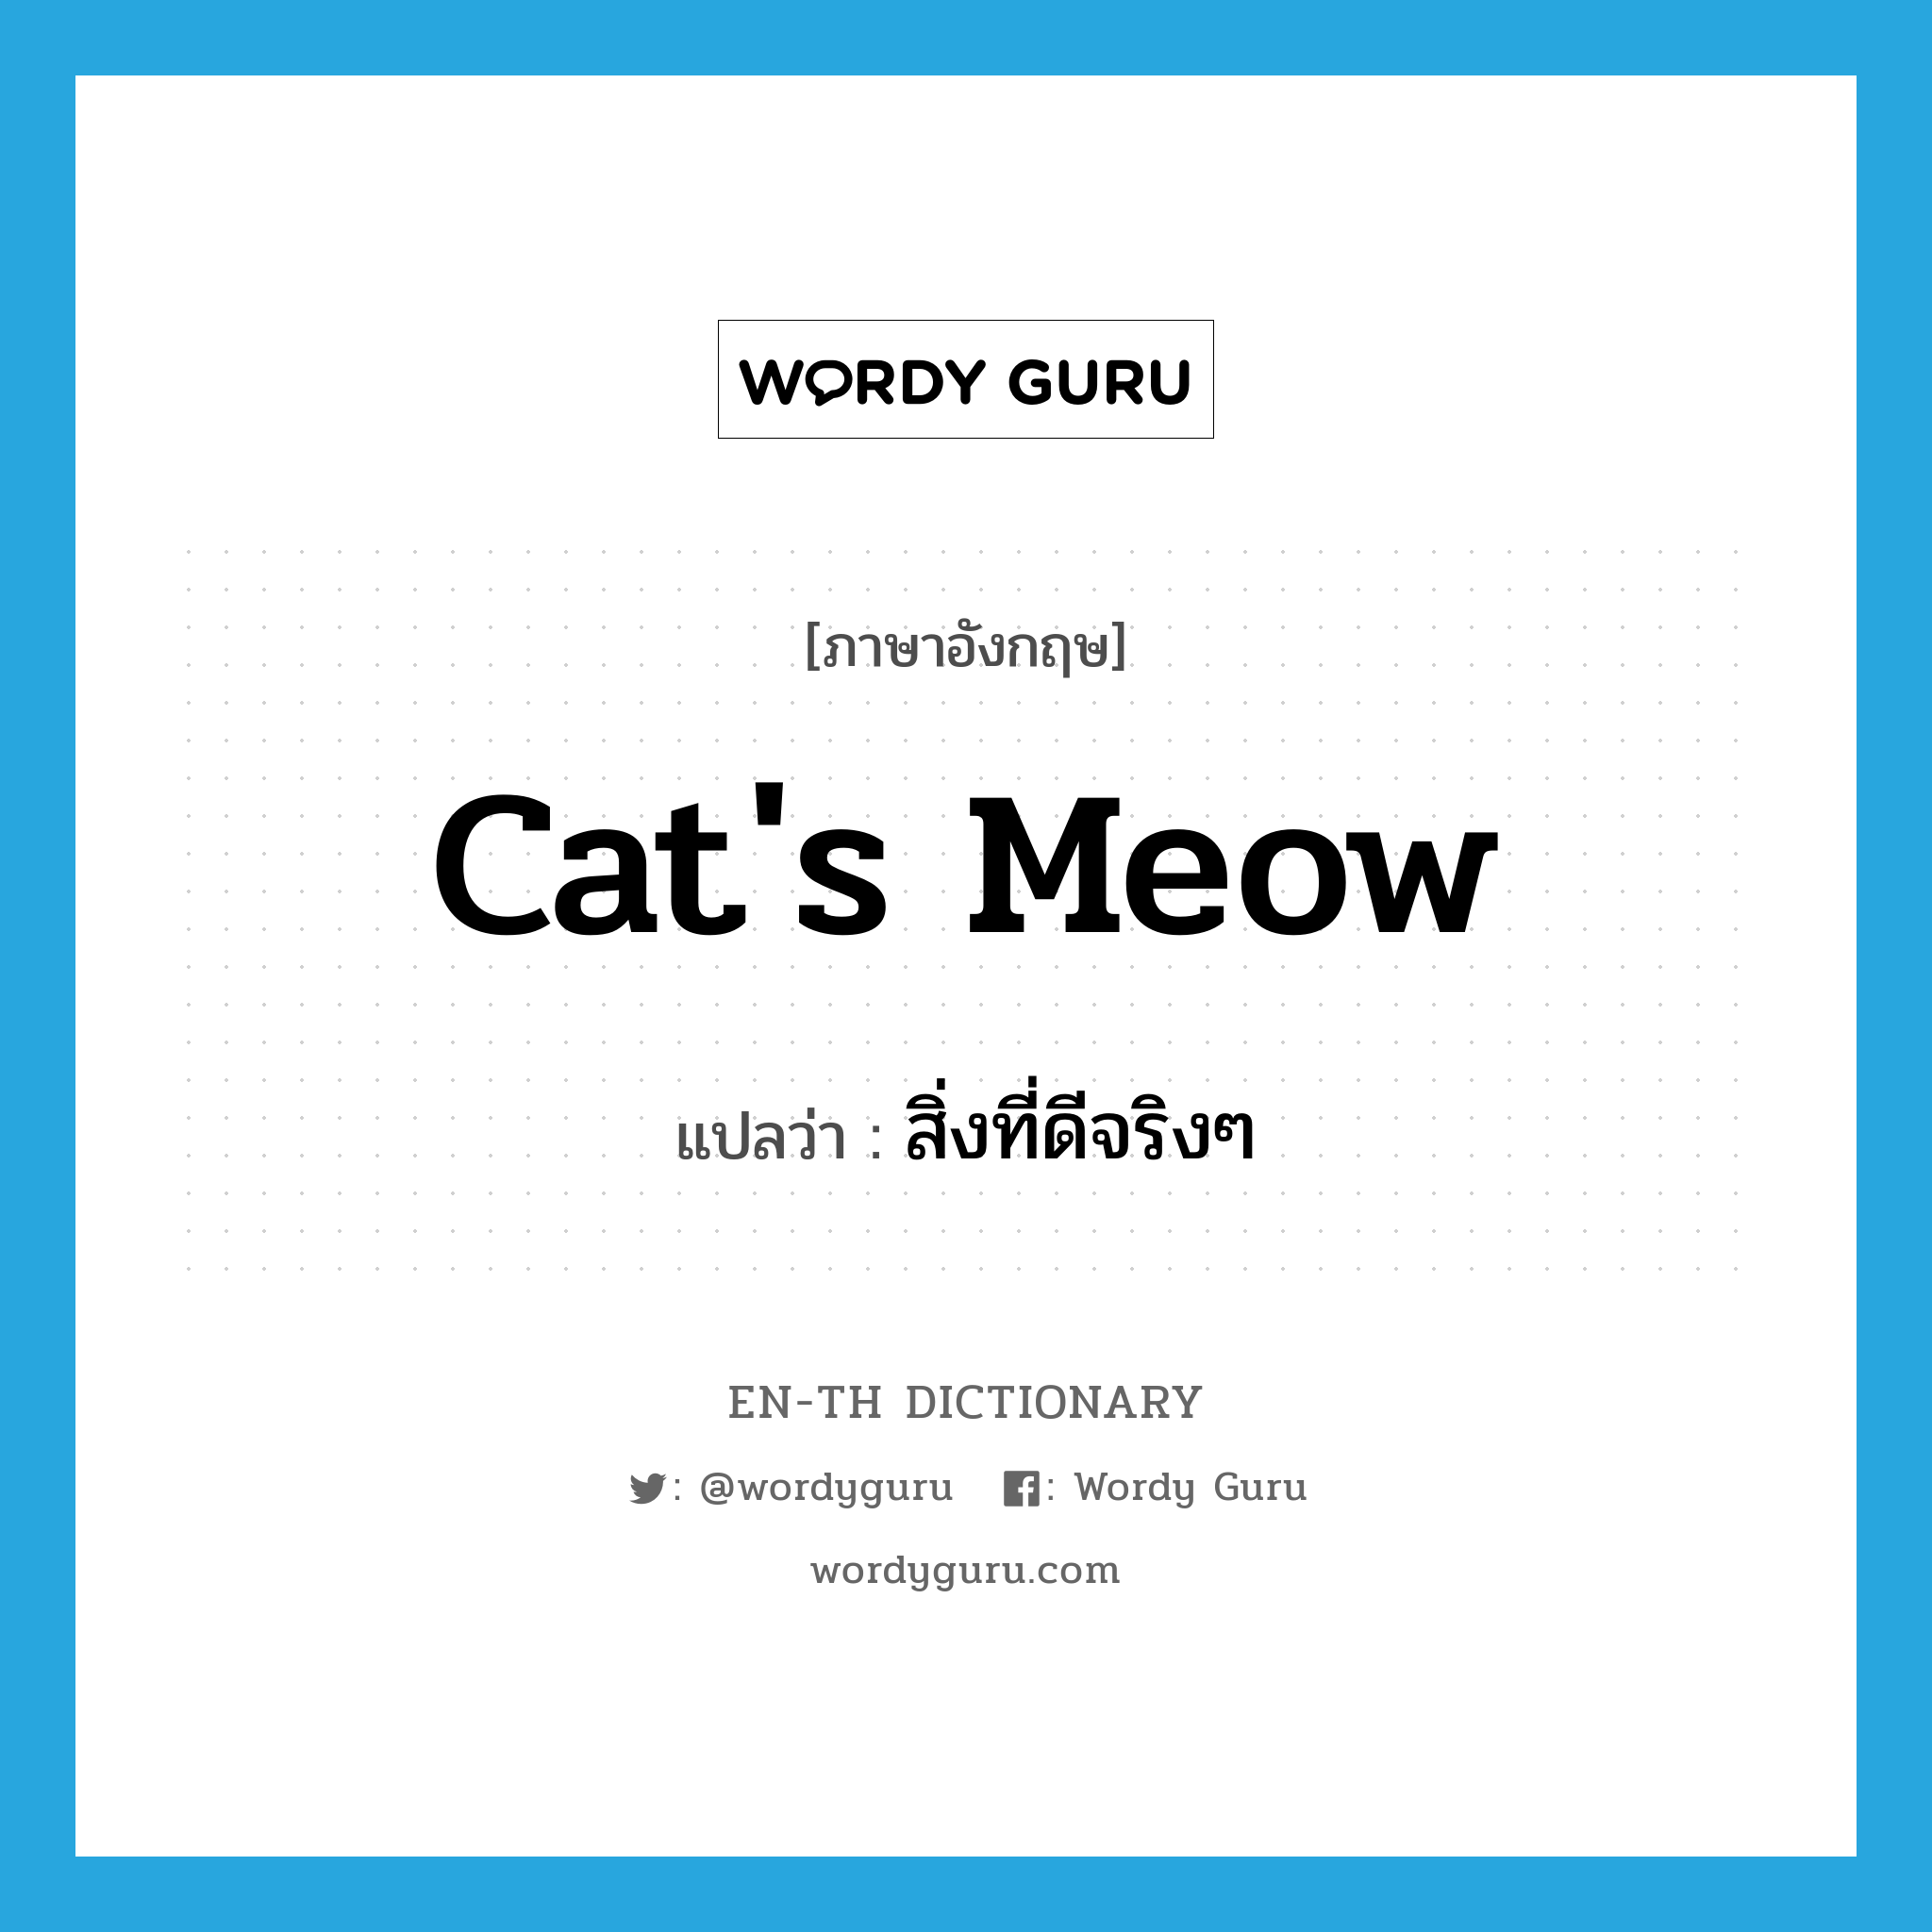 สิ่งที่ดีจริงๆ ภาษาอังกฤษ?, คำศัพท์ภาษาอังกฤษ สิ่งที่ดีจริงๆ แปลว่า cat's meow ประเภท SL หมวด SL